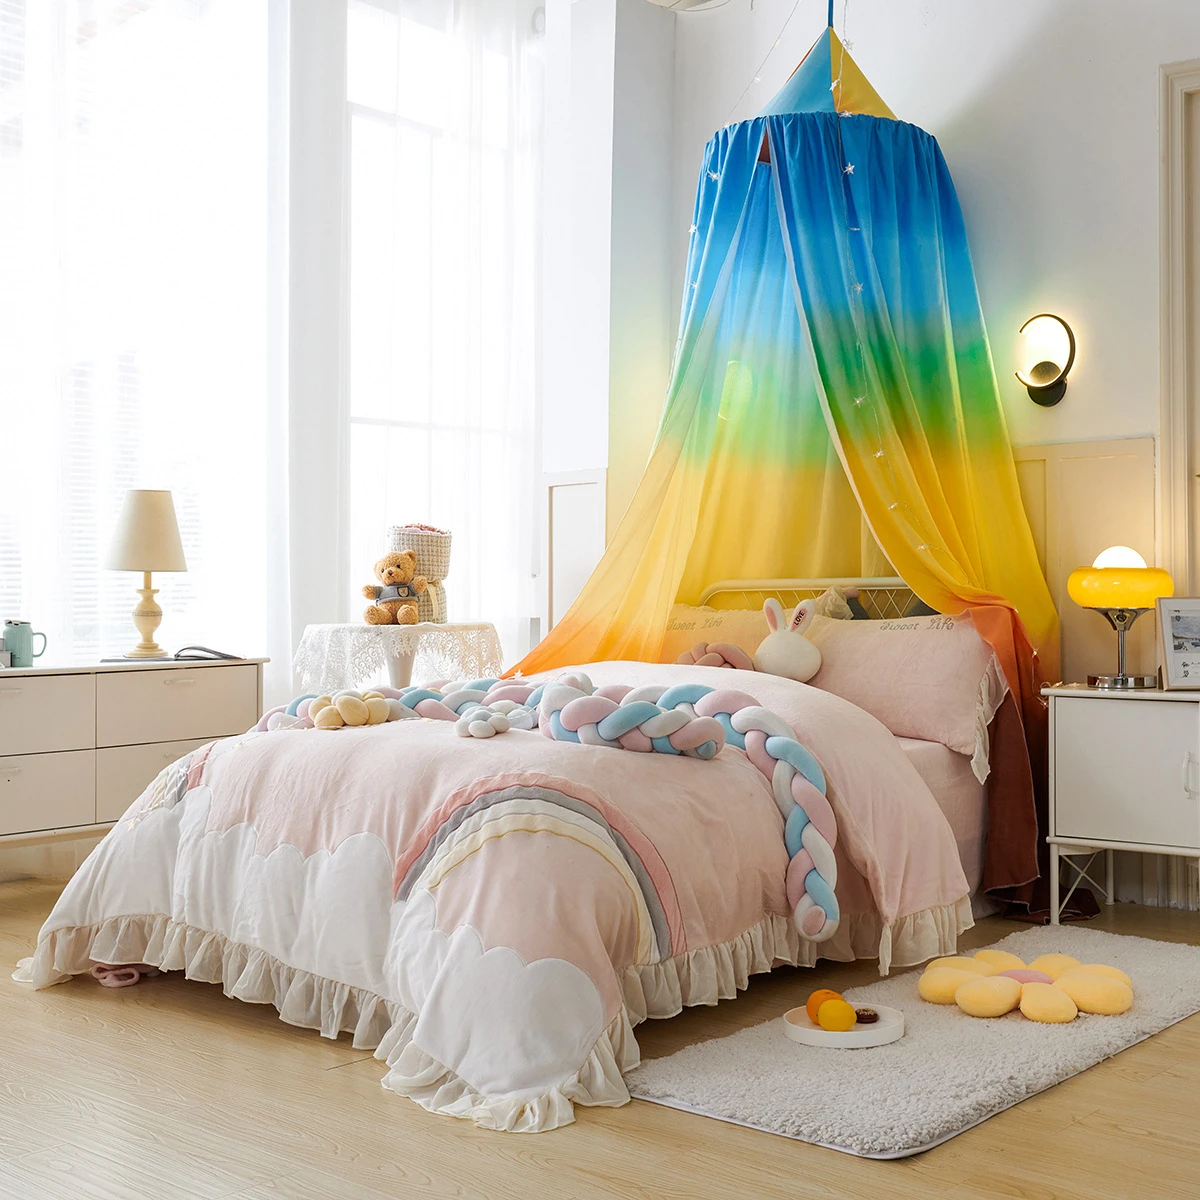 

Детская москитная сетка с принтом радуги детский навес кровать балдахин Бытовая купольная затеняющая палатка Бесплатная установка